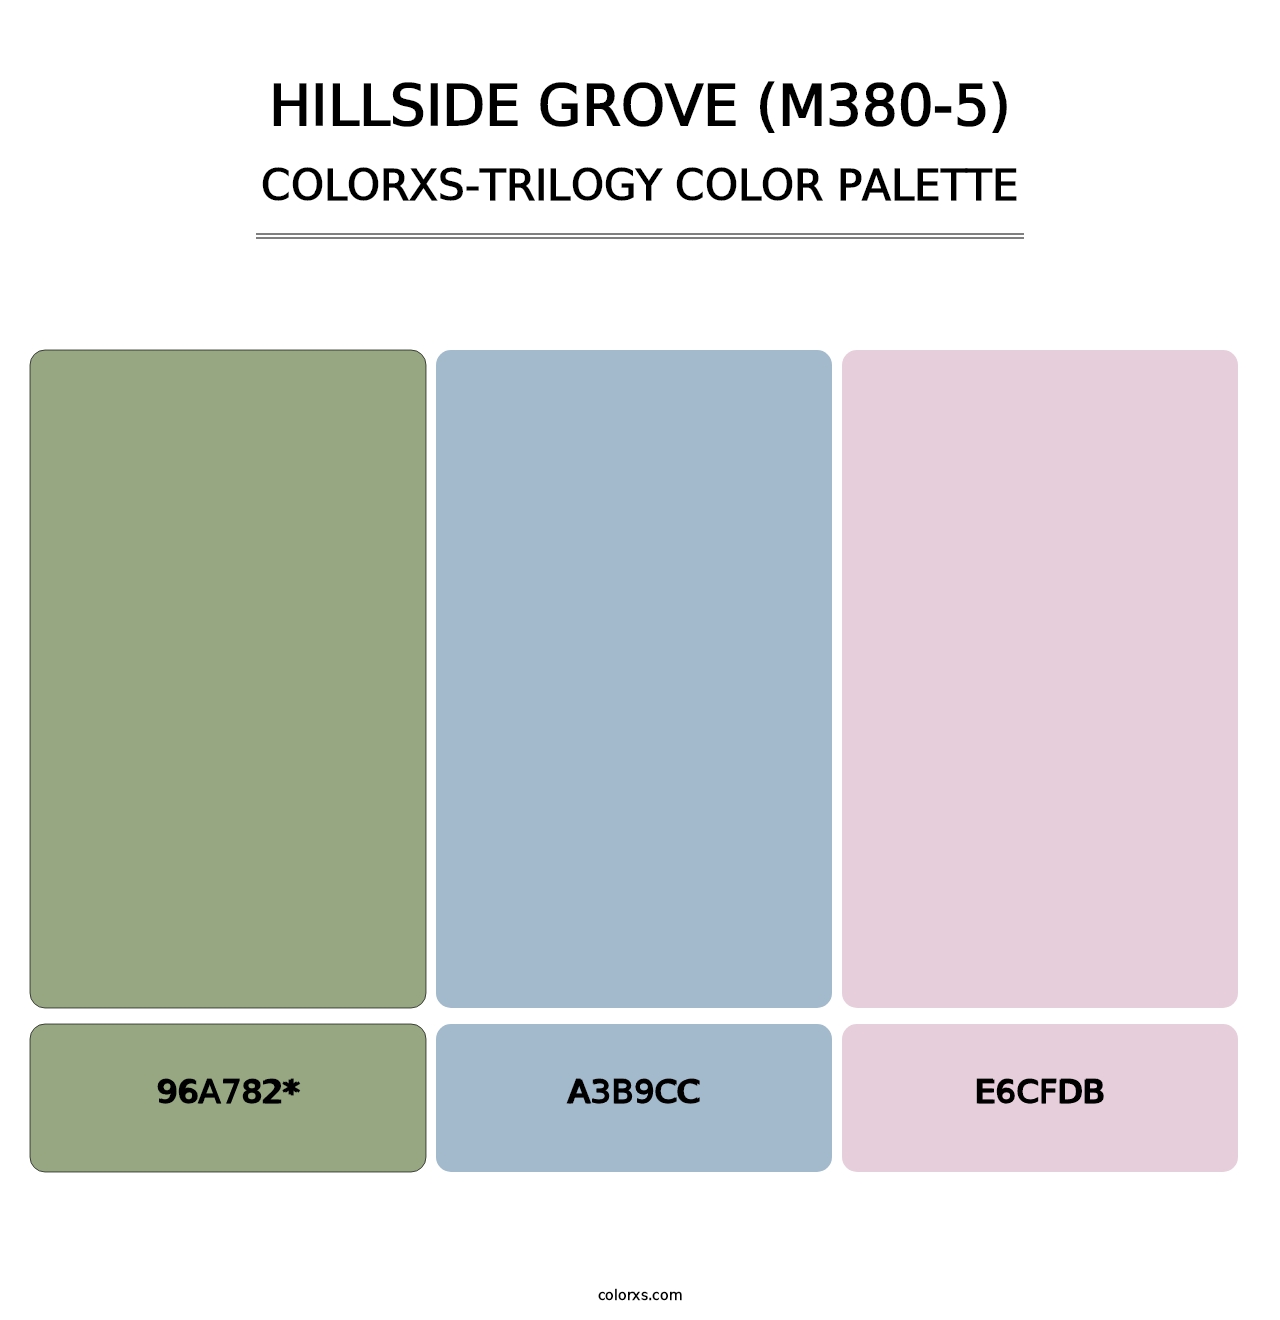 Hillside Grove (M380-5) - Colorxs Trilogy Palette